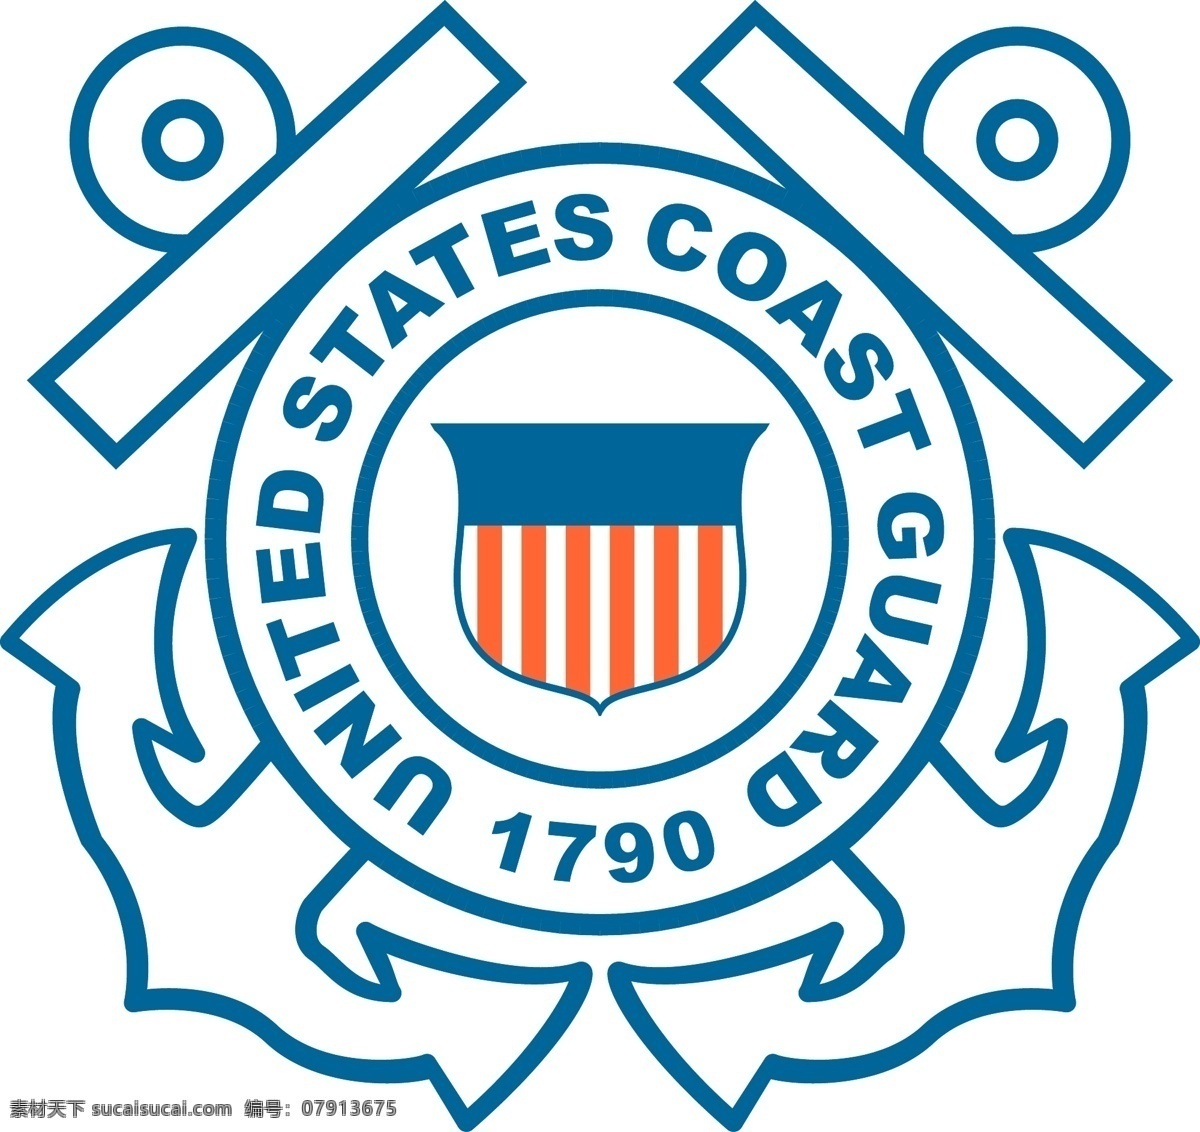 美国 各种 军队 标志 盾牌 徽章 模板 设计稿 素材元素 条纹 行政执法标志 肩章 源文件 矢量图